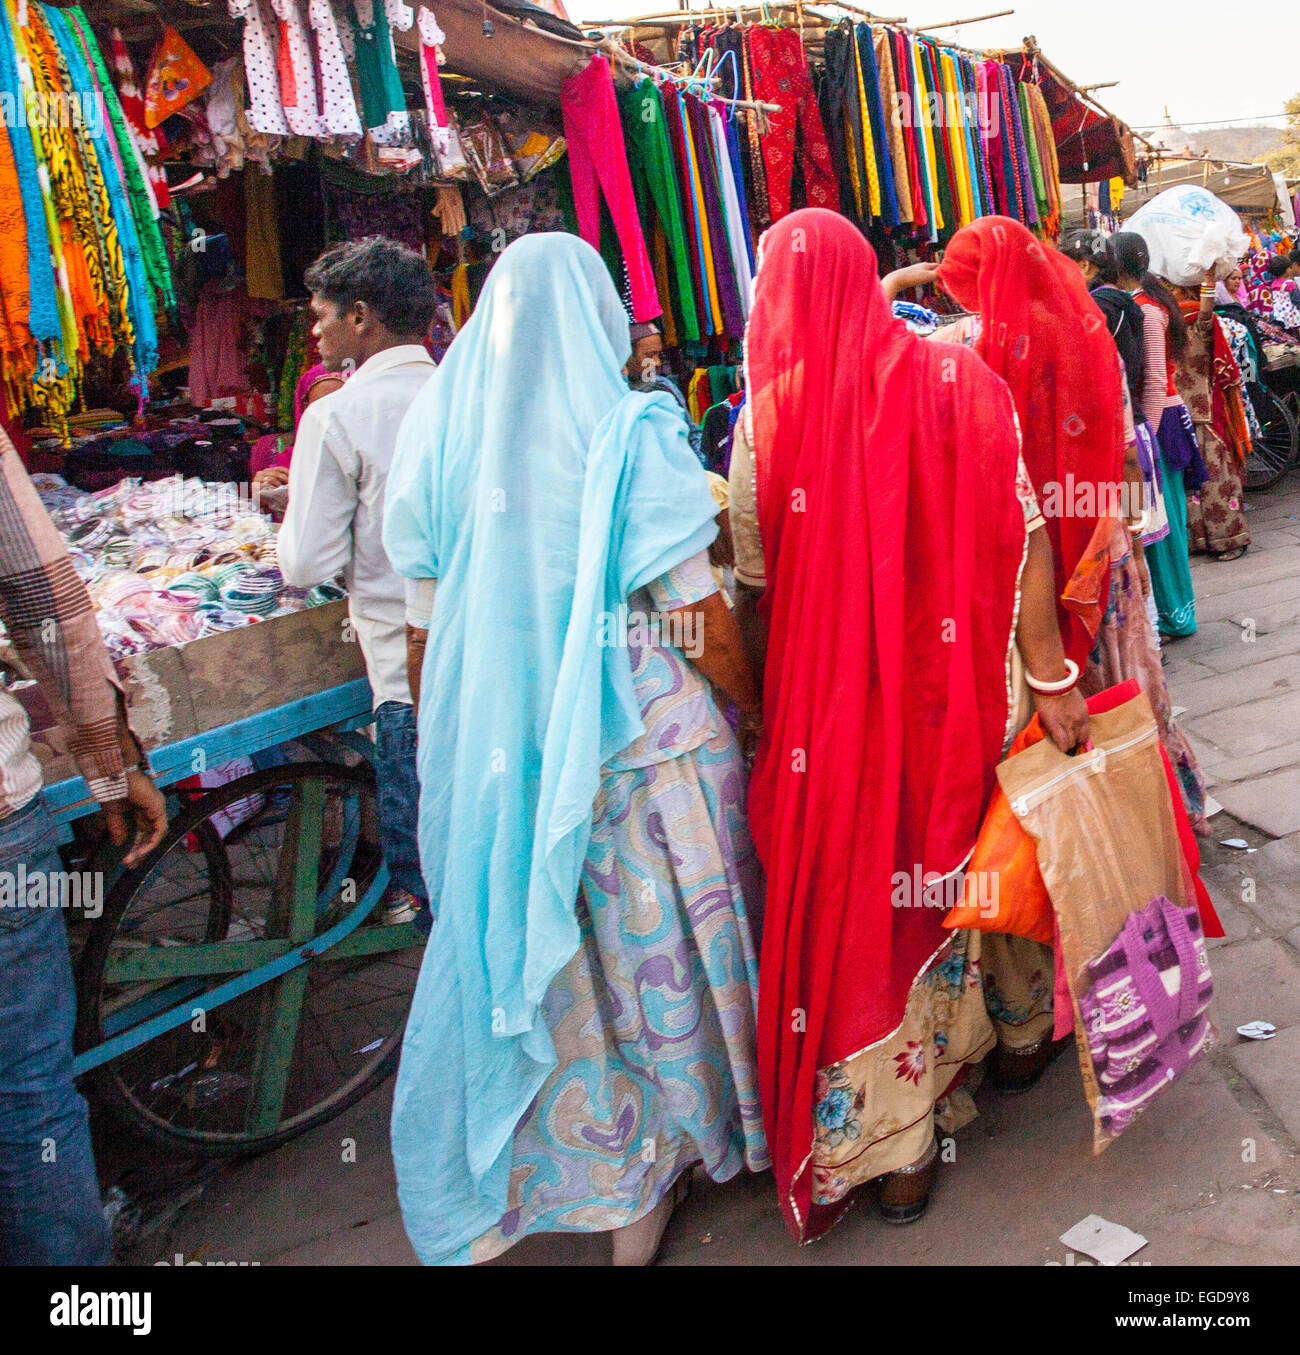 Bunte Saris in einem indischen Markt Stockfoto